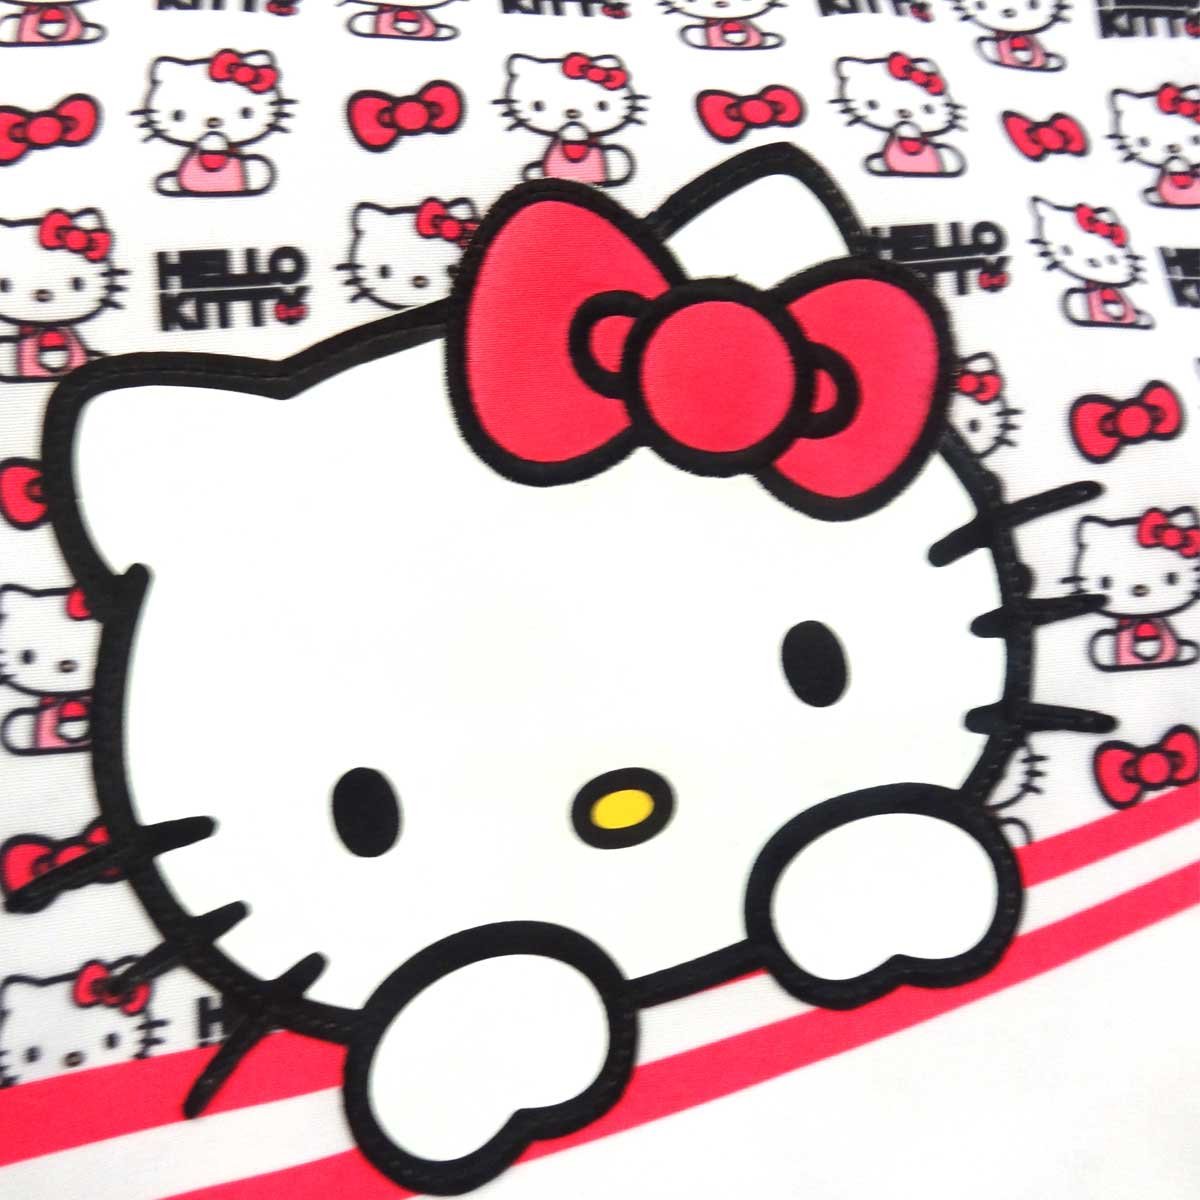 Bolsa Aplicacion Hello Kitty